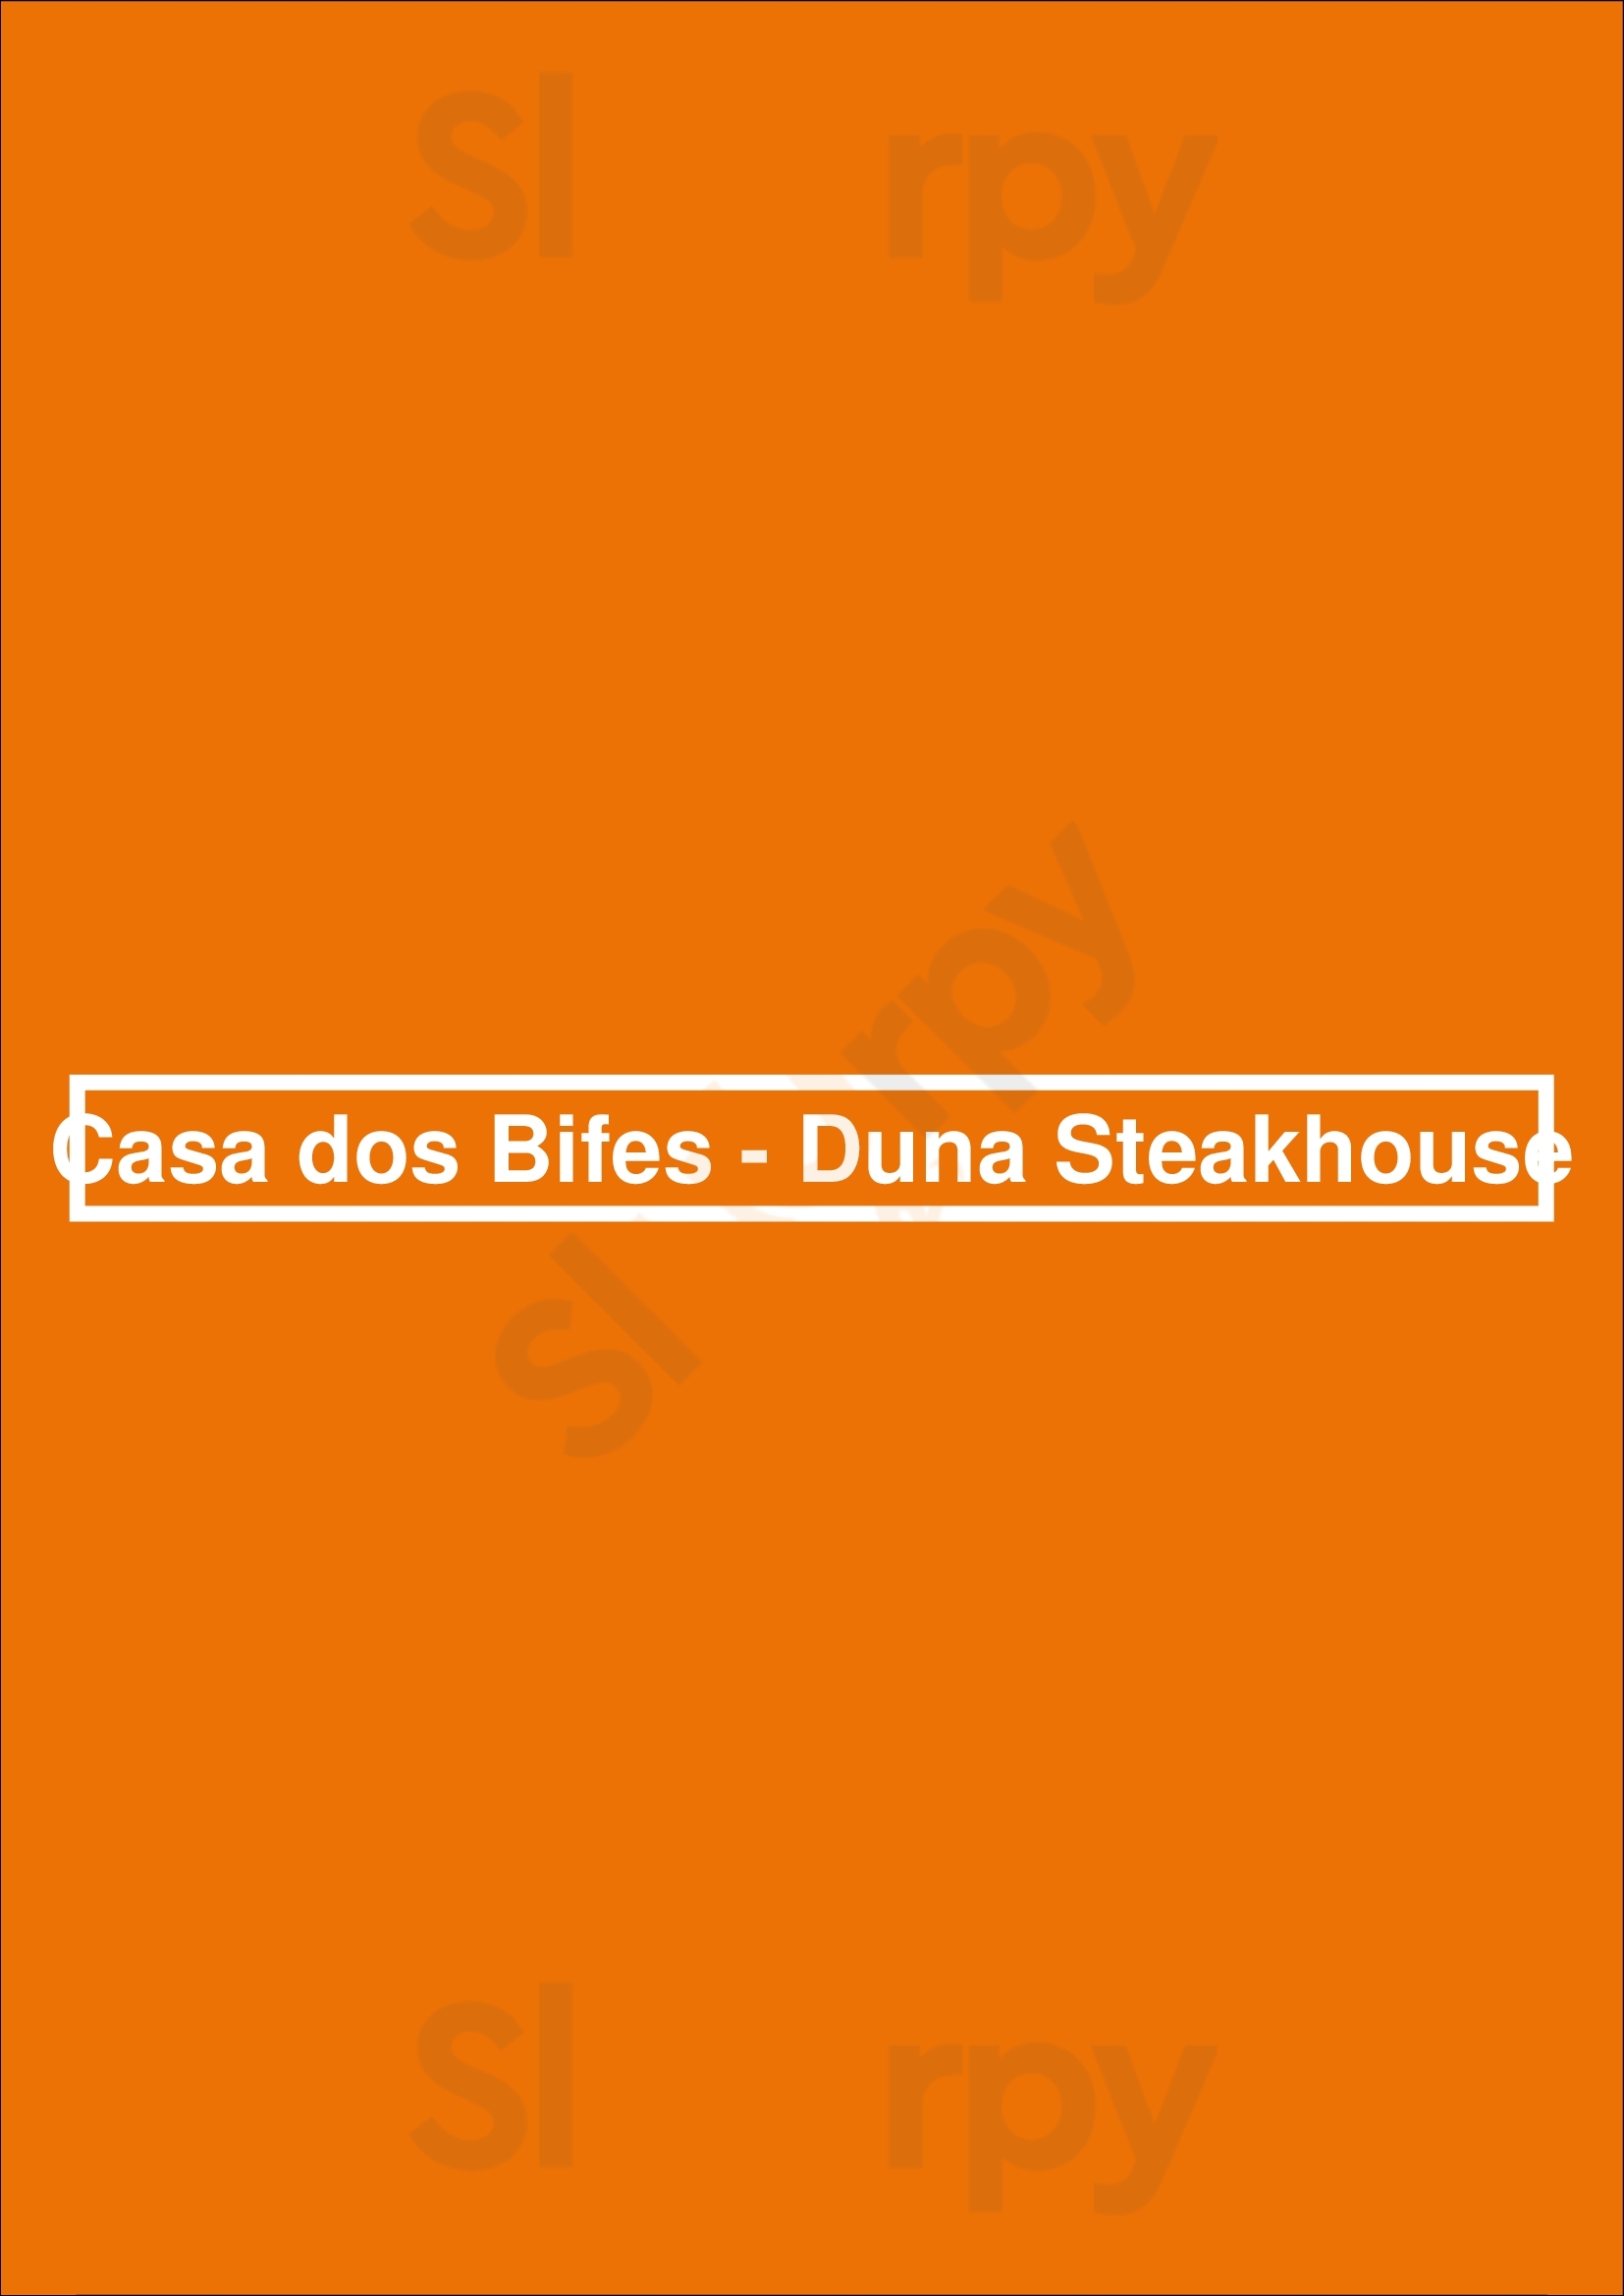 Casa Dos Bifes - Duna Steakhouse Vila Nova de Milfontes Menu - 1